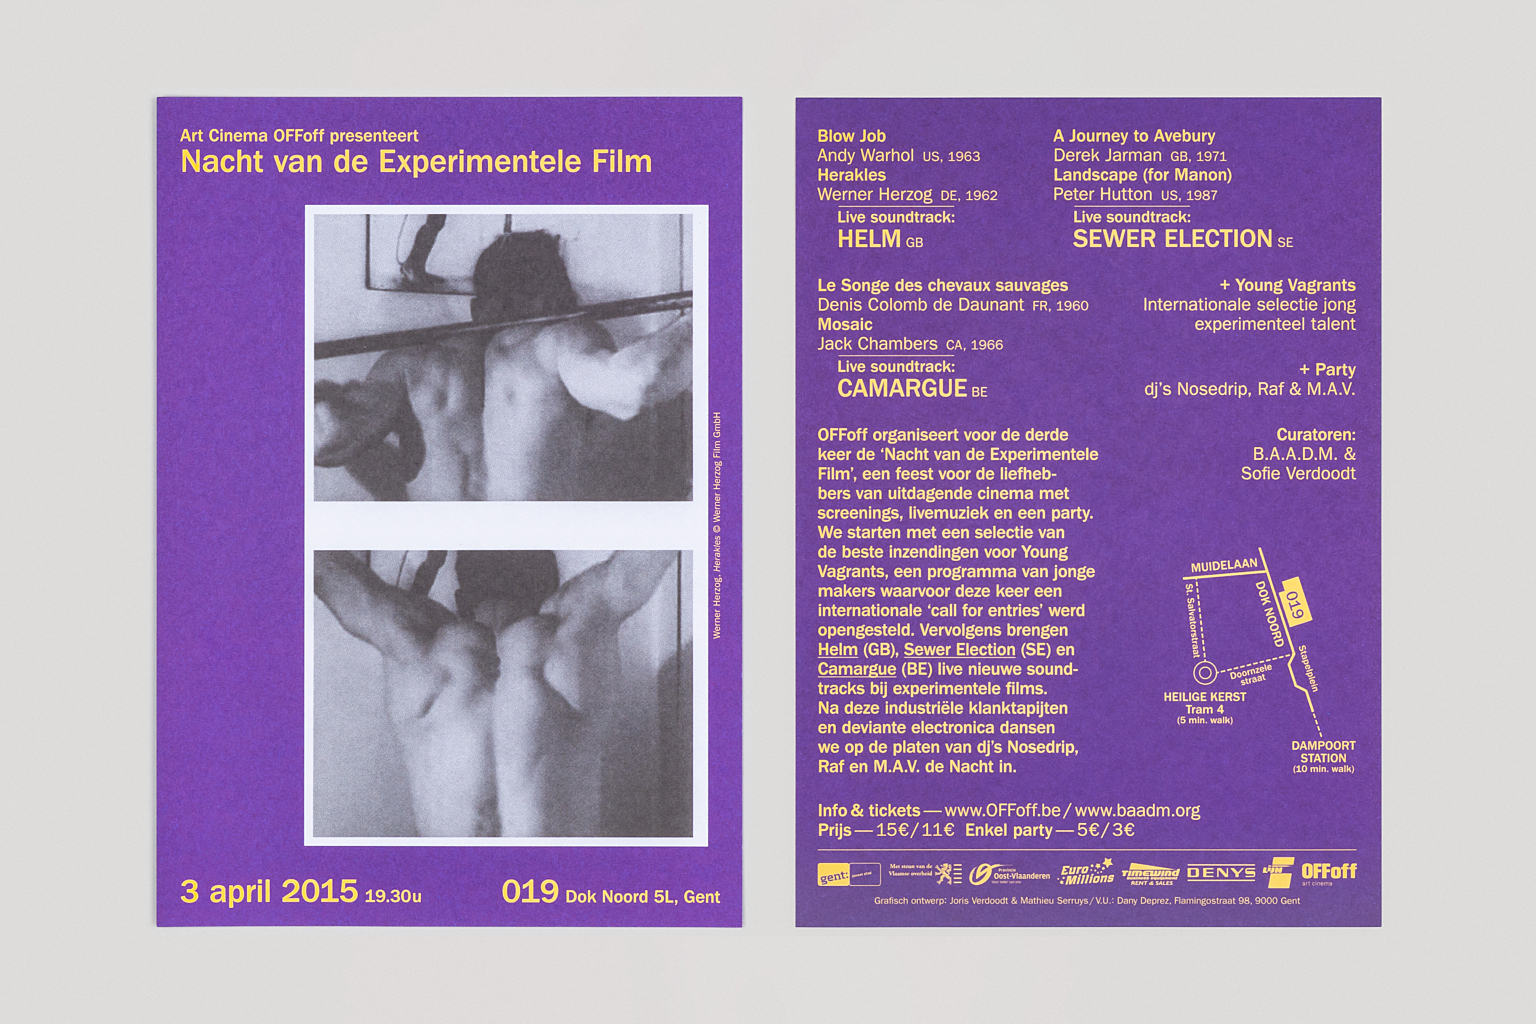 OF Foff nacht van de experimentele film 2015 flyers